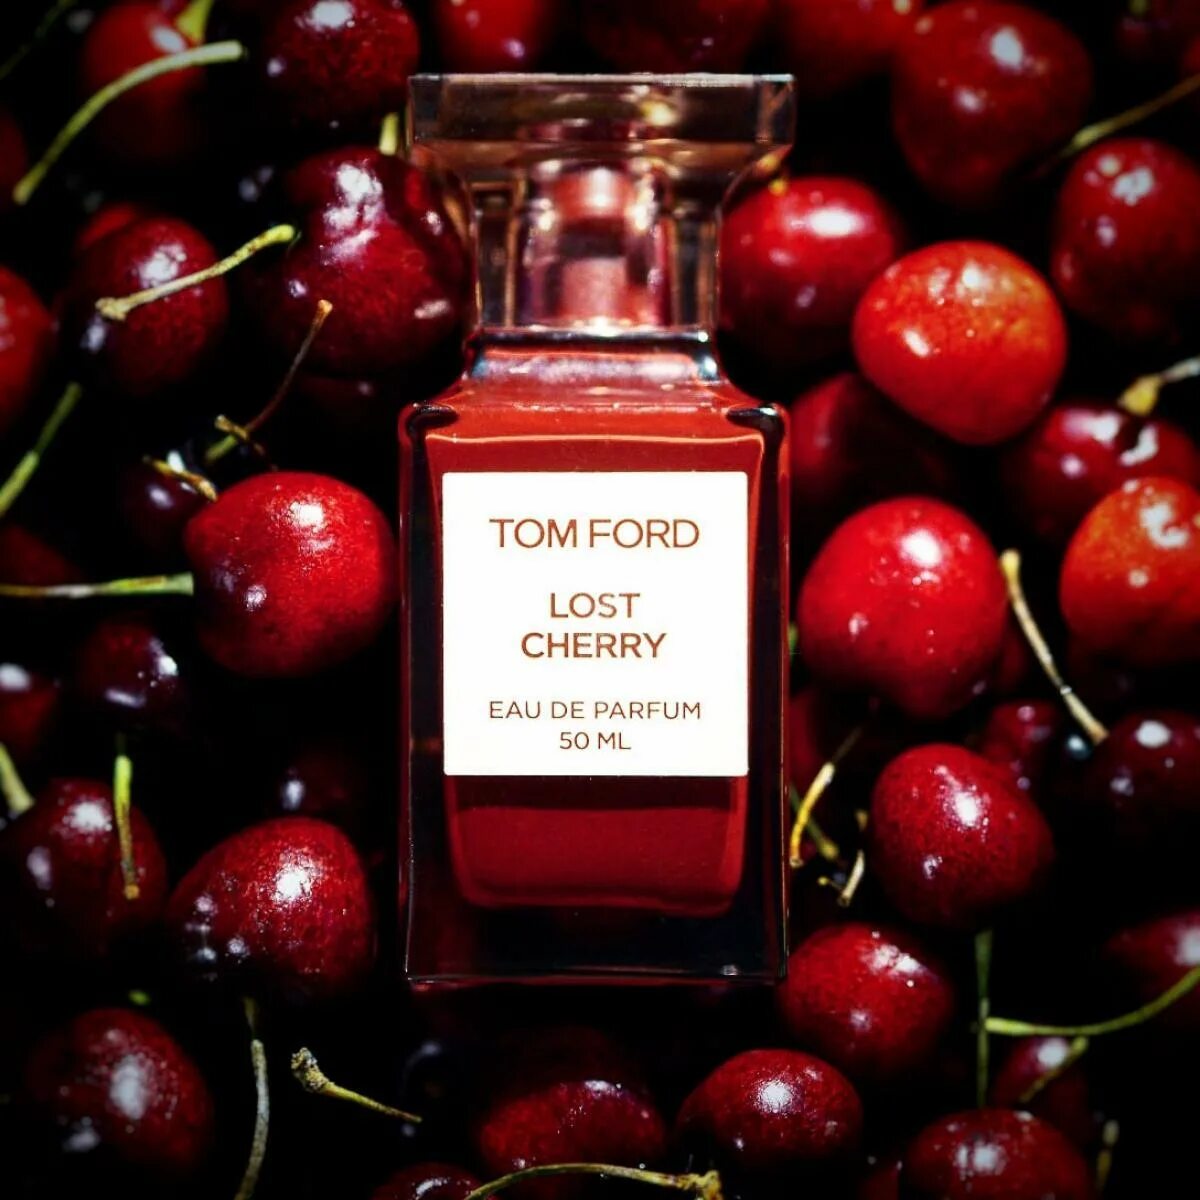 Last cherry. Том Форд лост черри. Том Форд лост черри 100 мл. Духи Tom Ford Lost Cherry. Tom Ford "Lost Cherry Eau de Parfum" 50 ml.